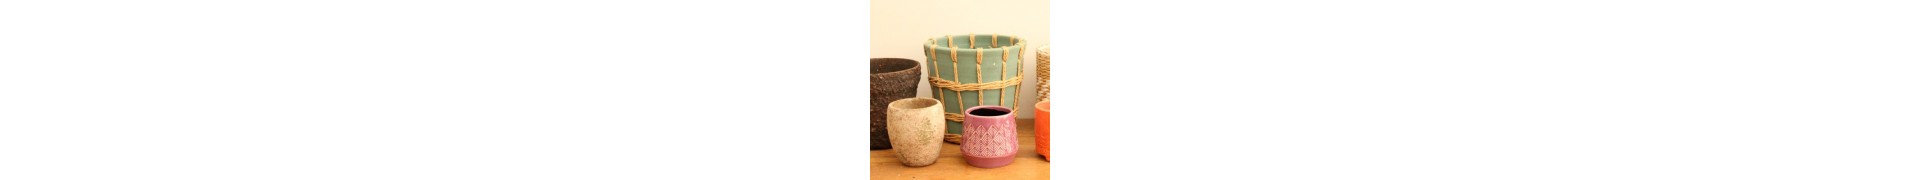 Compre tampas de vasos decorativas para suas plantas  | La Majosa